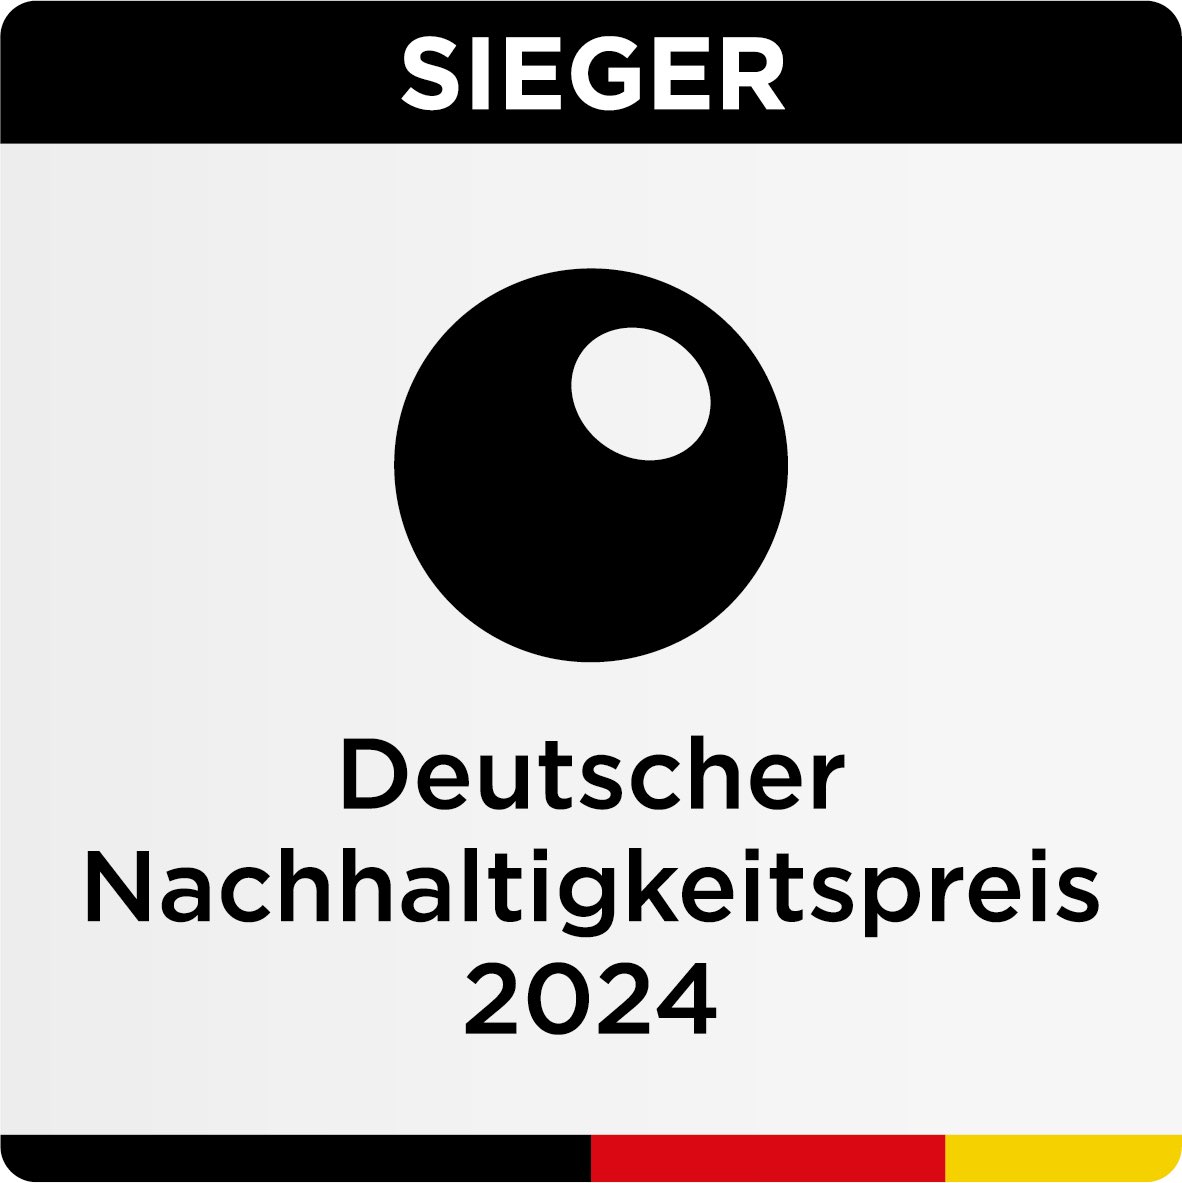 Das Klinikum Stuttgart erhält den Deutschen Nachhaltigkeitspreis 2024, Europas größte Auszeichnung für ökologisches und soziales Engagement. klinikum-stuttgart.de/aktuell-im-kli…